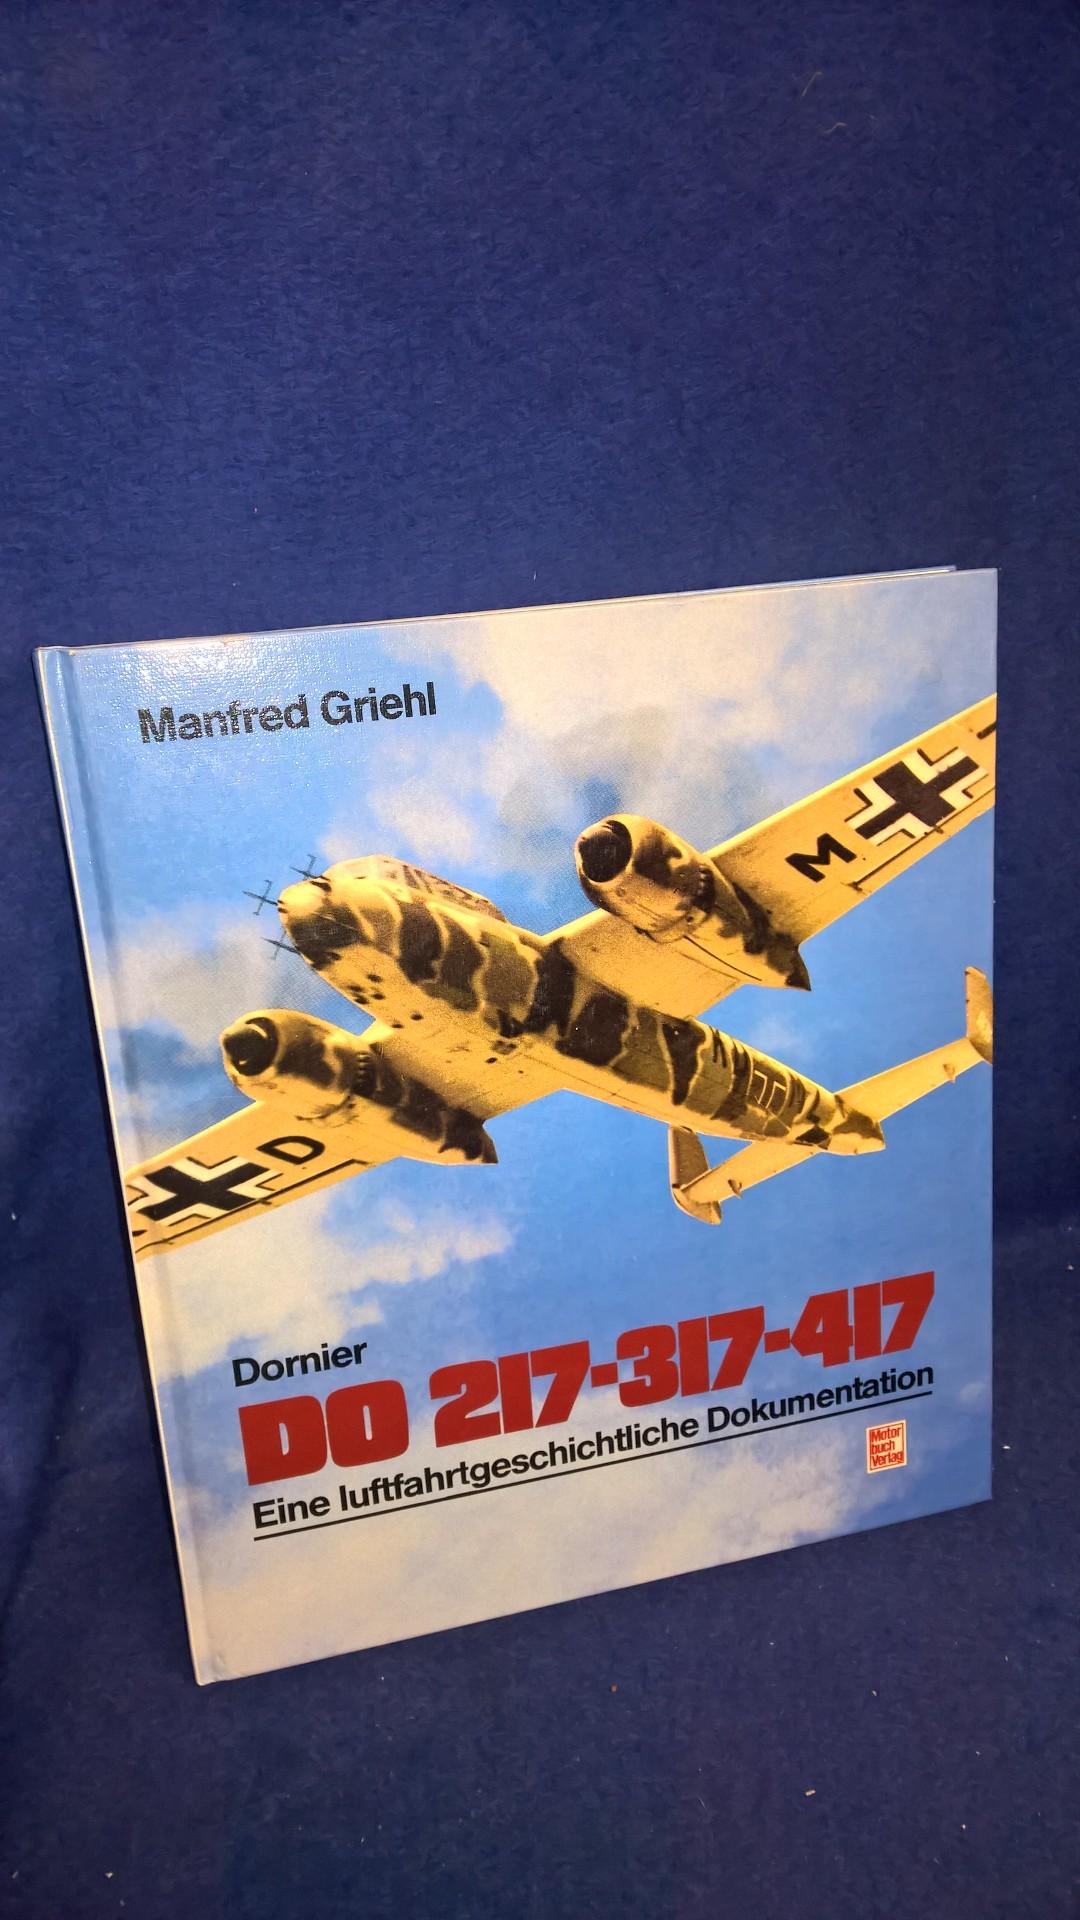 Dornier Do 217 - 317 - 417. Eine luftfahrtgeschichtliche Dokumentation.